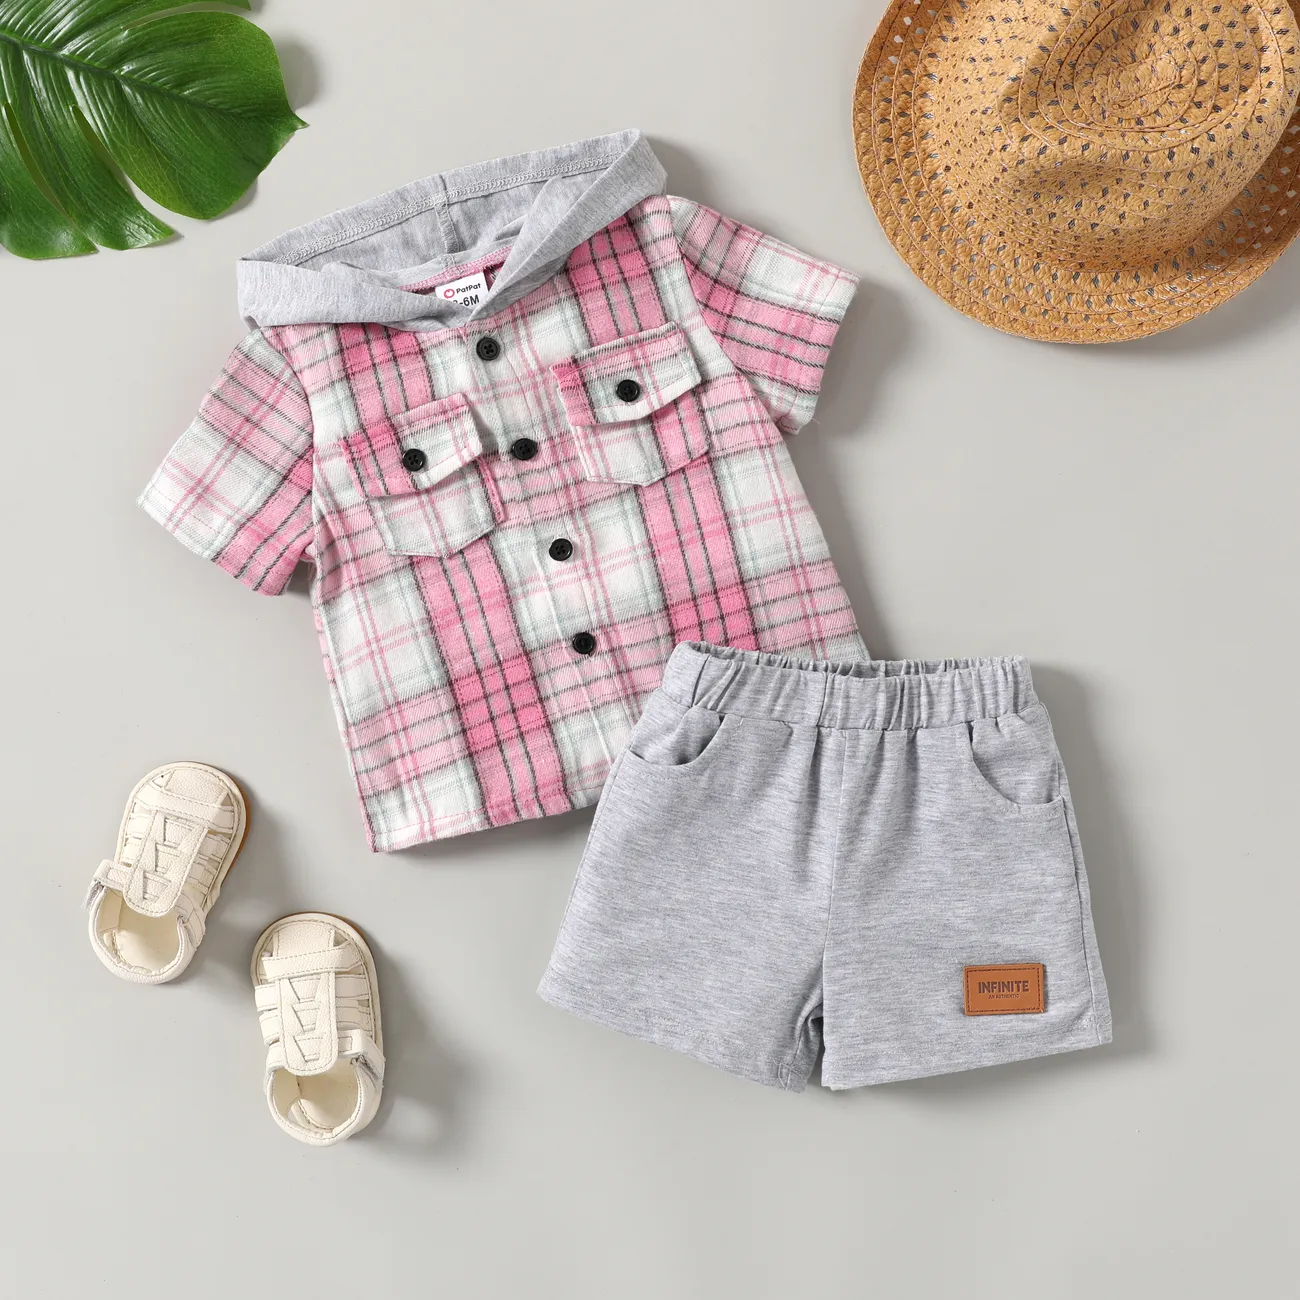 Bebê/Toddler Boy 2pcs xadrez estampa camisa com capuz e shorts Set Rosa big image 1